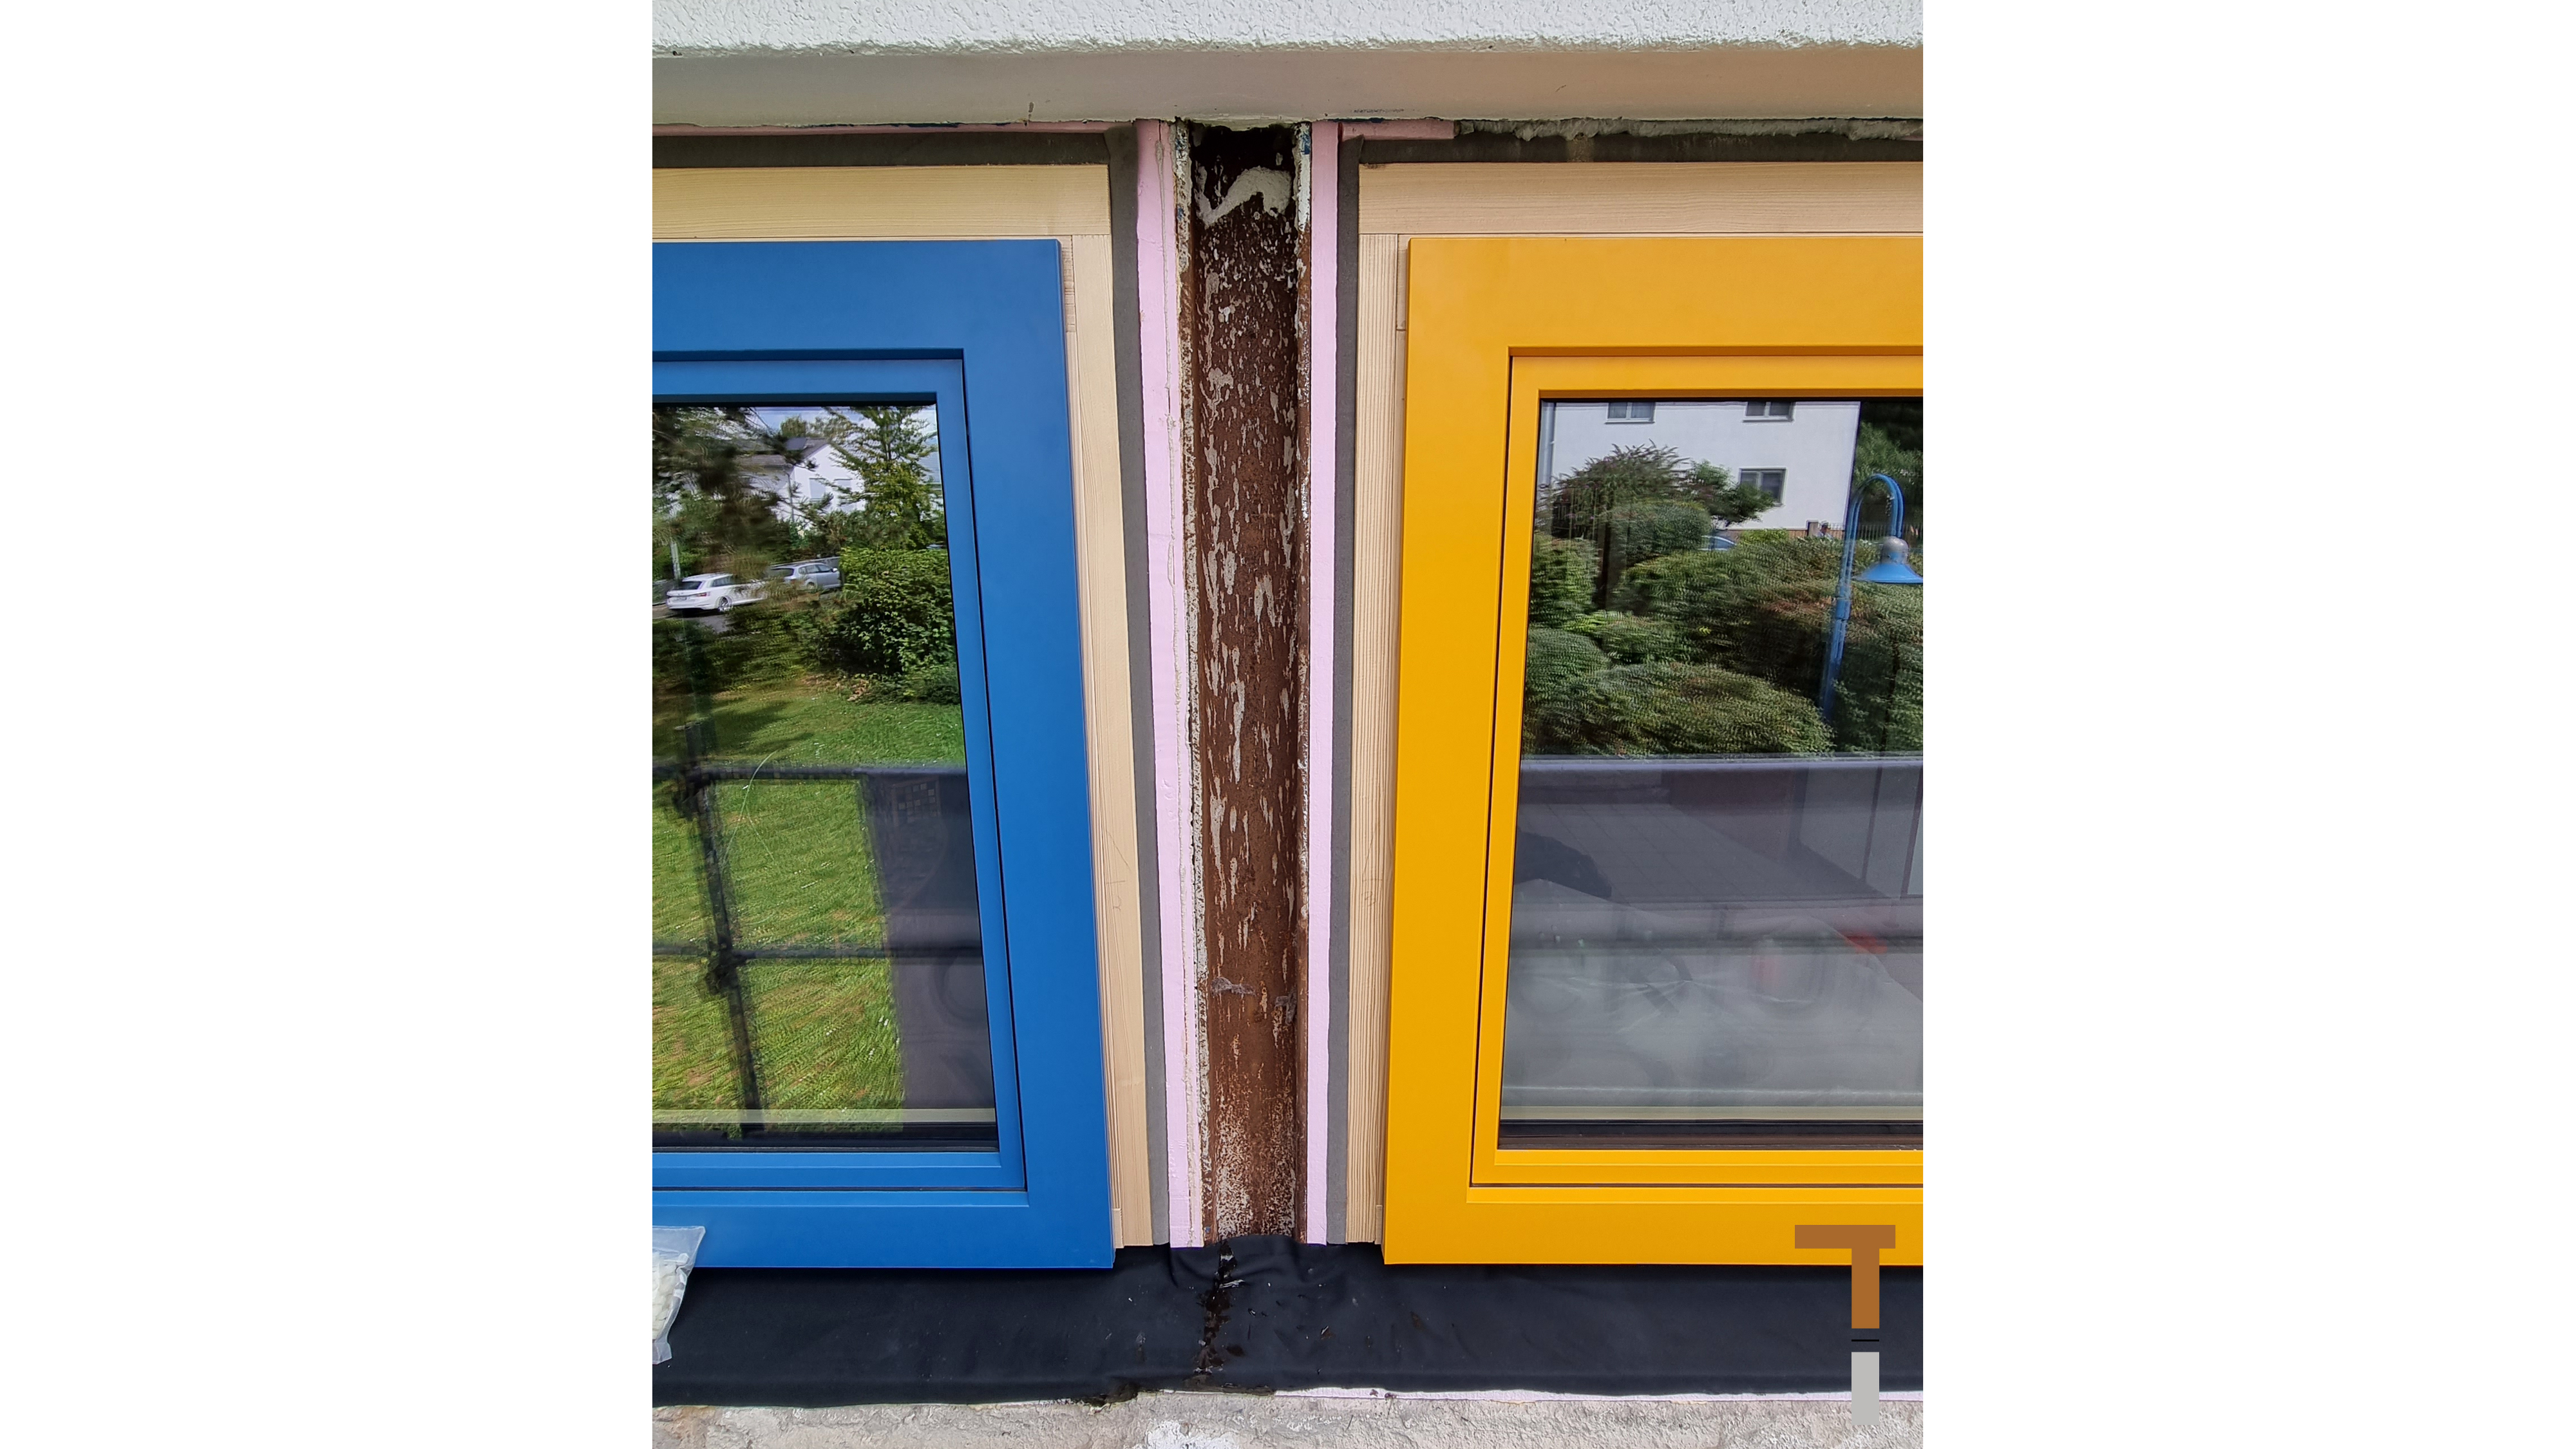 Fenstererneuerung Kindertagesstätte - Neue Fenster mit Rahmenaufdopplung, 20mm XPS-Dämmung seitlich der Stahlstütze und Abdichtung unter Fensterbank